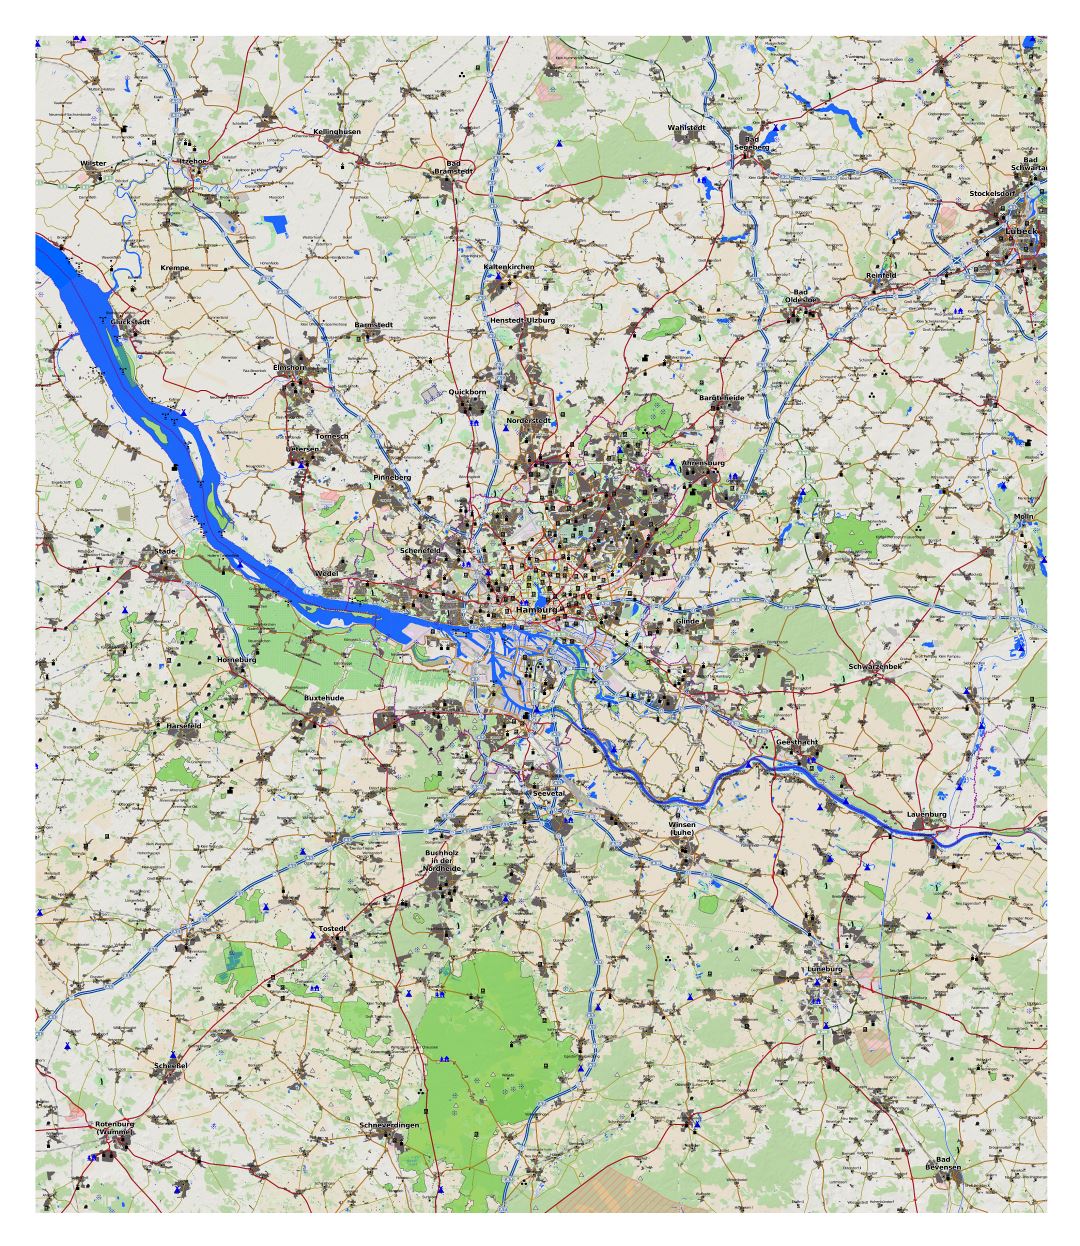 Gran mapa detallado de la ciudad y sus alrededores zona de Hamburgo